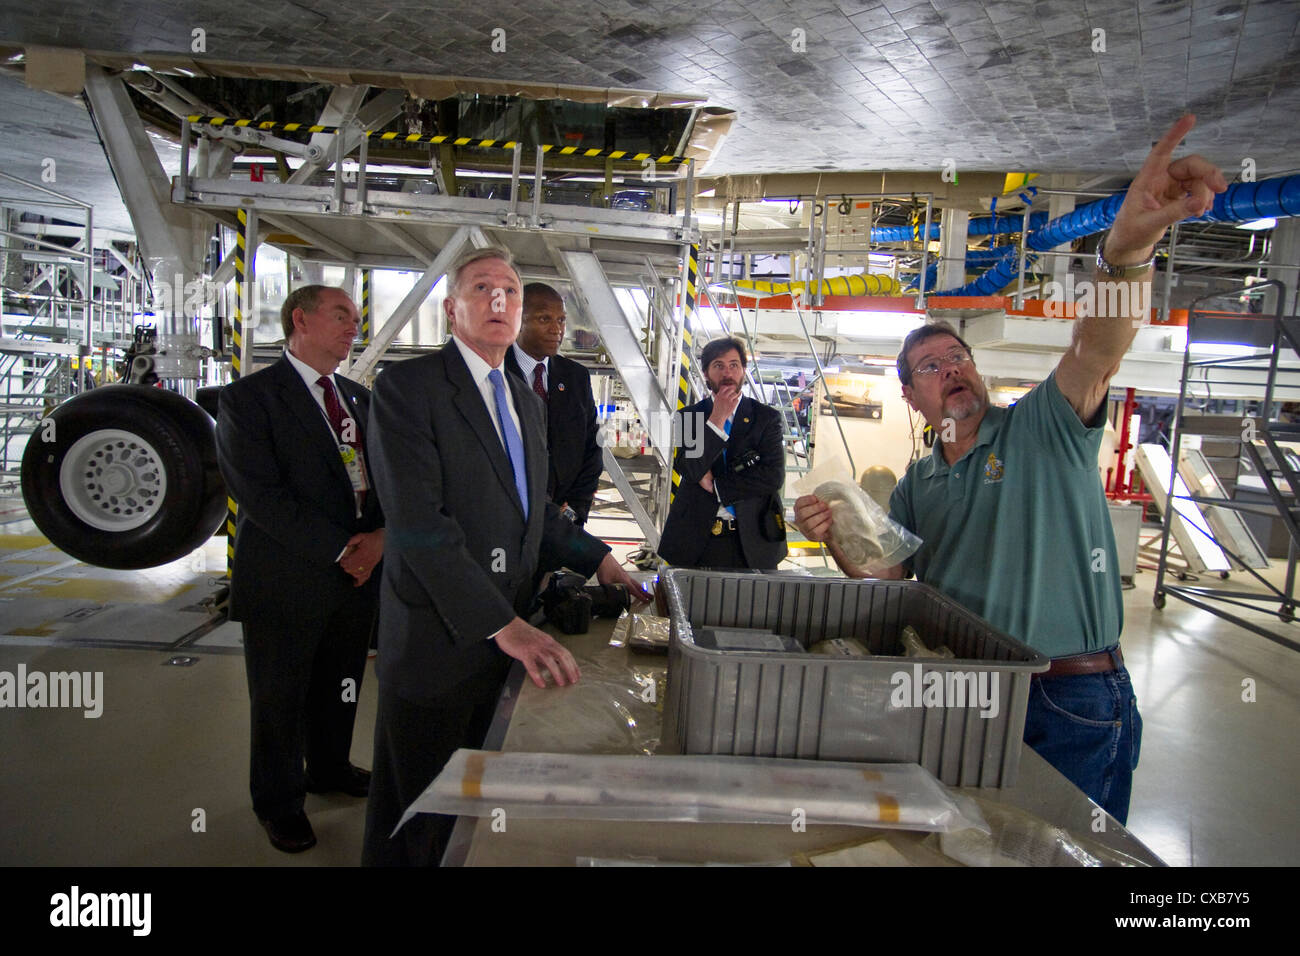 El secretario de la marina, el honorable ray mabus, está debajo del transbordador espacial Atlantis durante una visita a las instalaciones de procesamiento del Orbitador de la NASA en el Centro Espacial Kennedy. Foto de stock